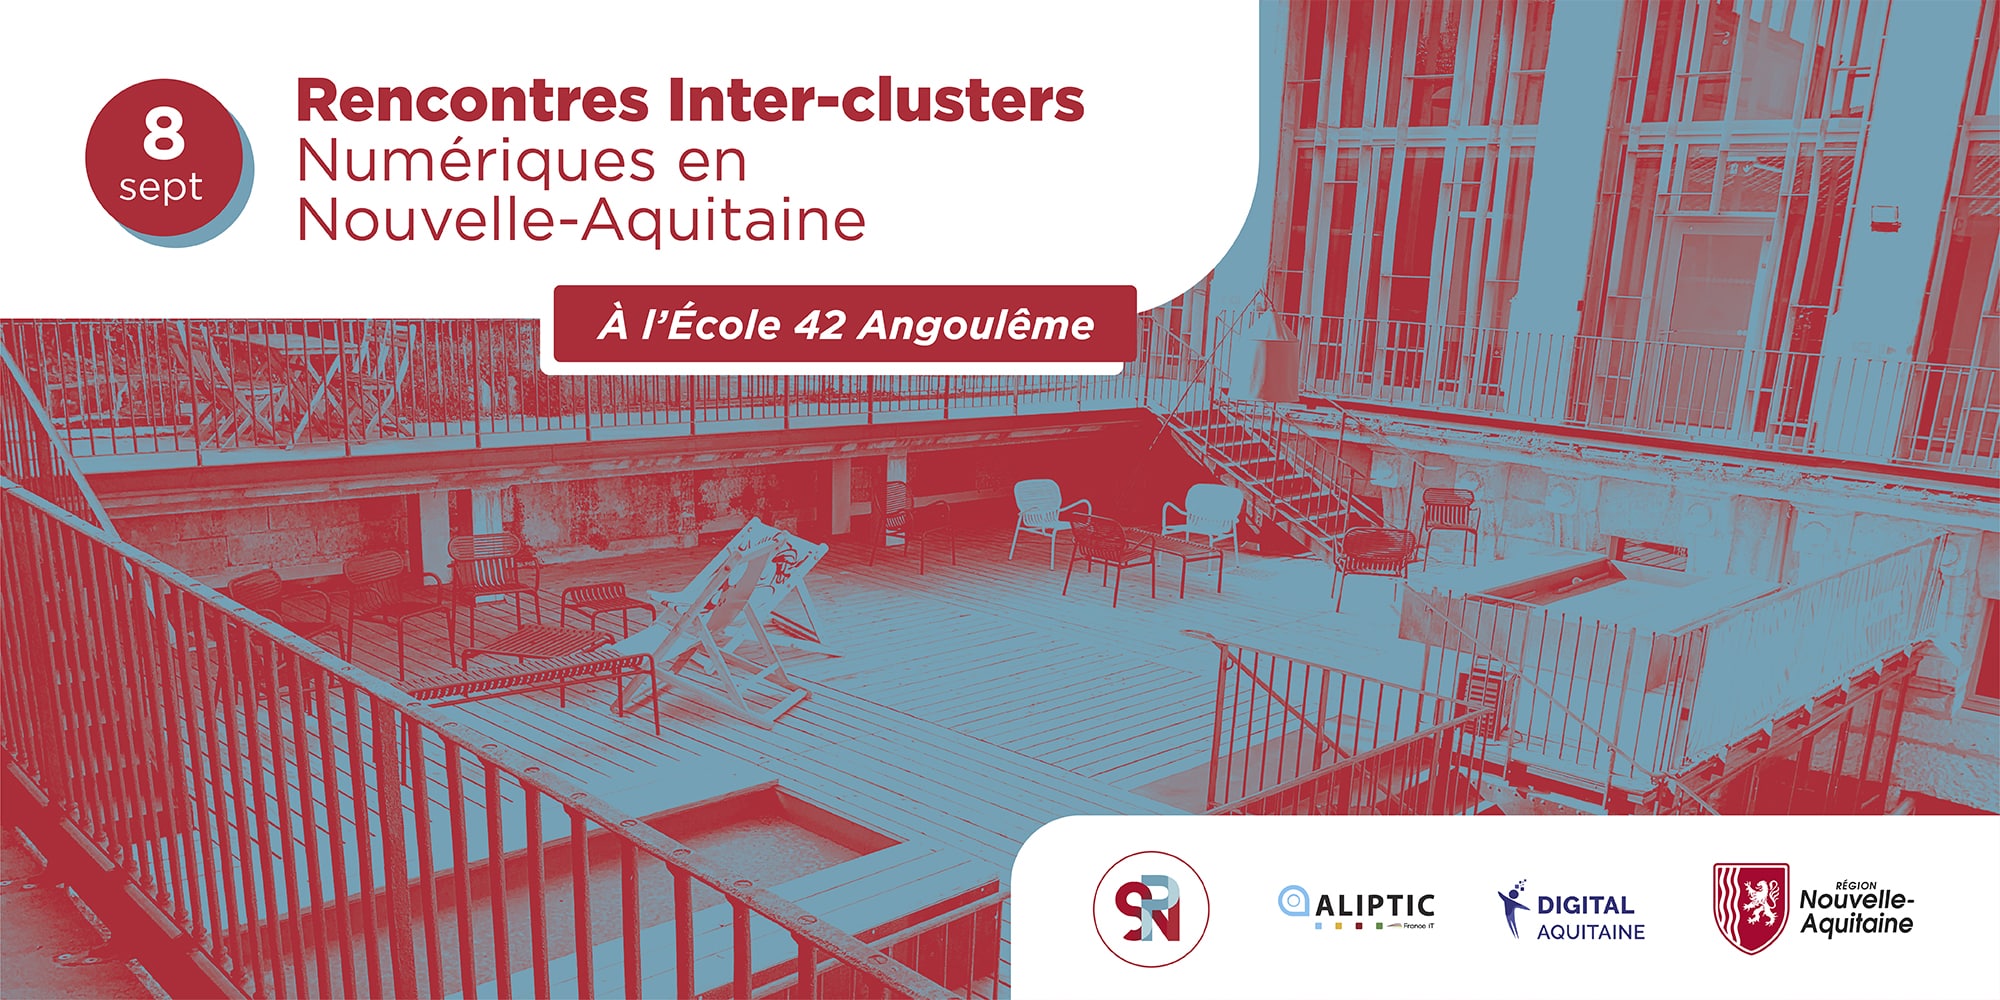 La 1ère édition Rencontre Inter-clusters numériques en Nouvelle-Aquitaine aura lieu le 8 septembre 2022 de 10h à 14h30 à Angoulême